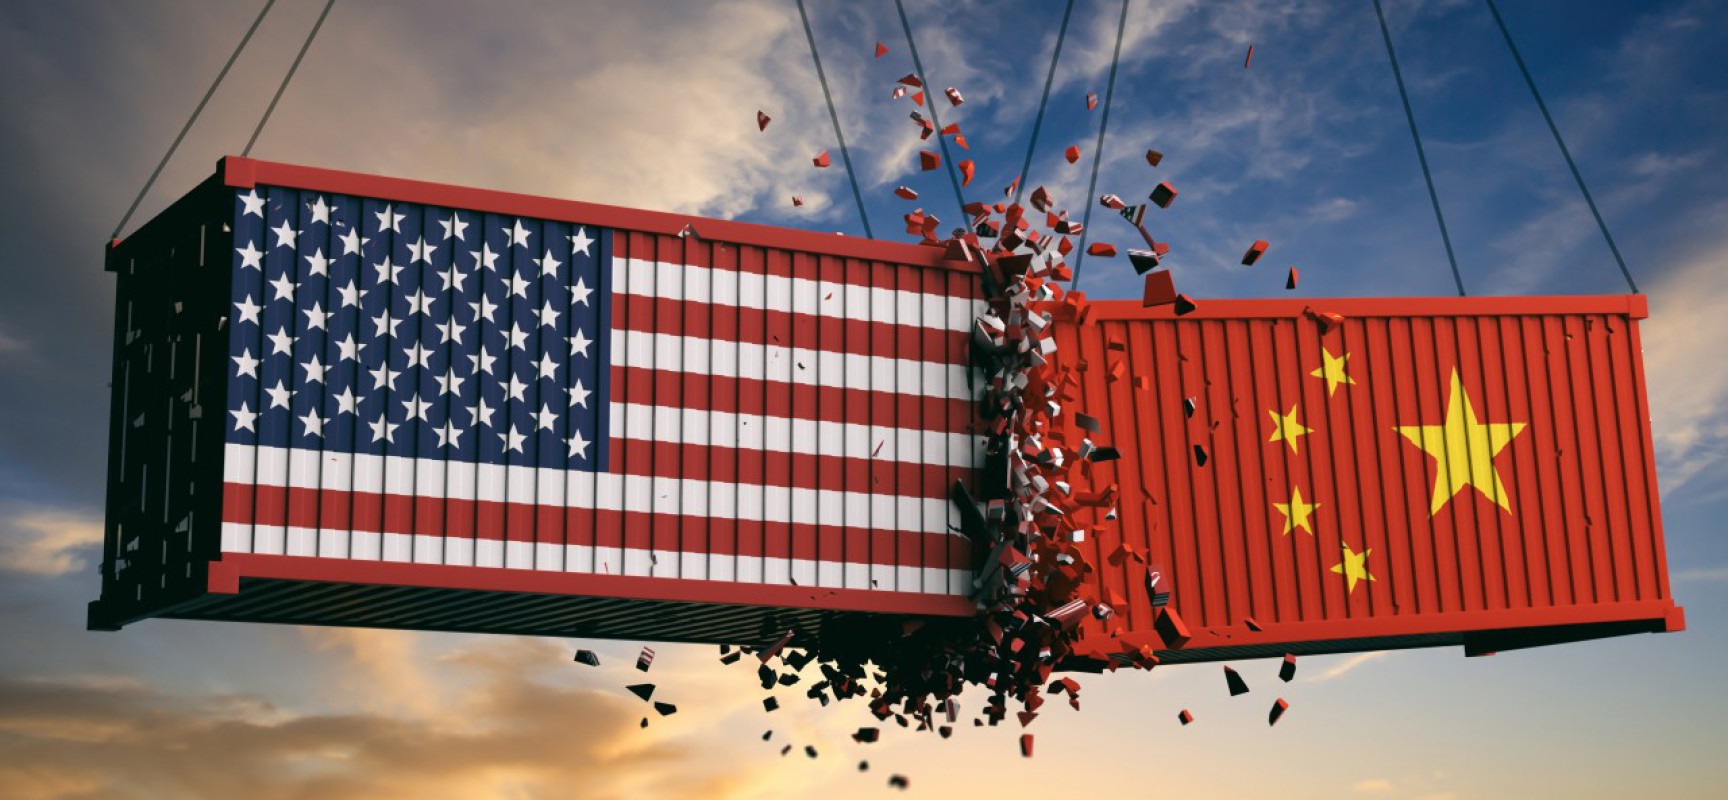 Comment l'Asie et l'Europe réagissent-elles face à la guerre commerciale engagée par l'Amérique ? (Source : Réseau international)